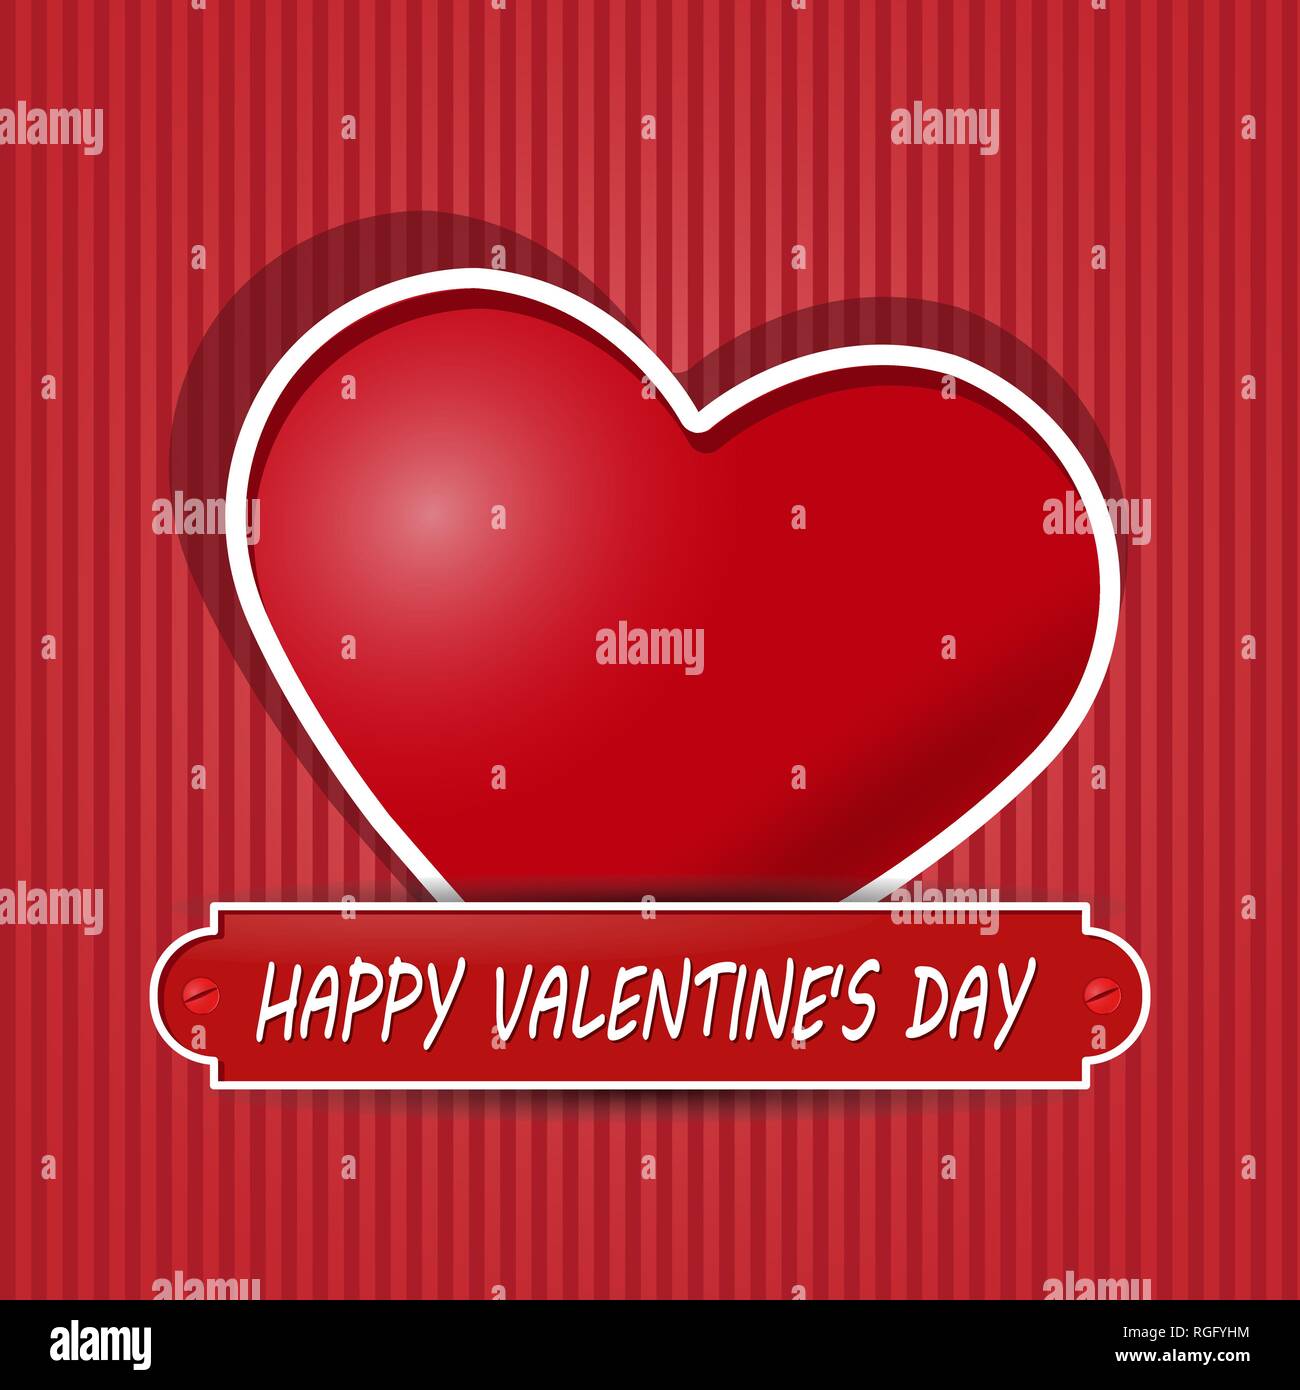 Herzlichen Glückwunsch zum Valentinstag. Herz und Beschriftung Stock Vektor